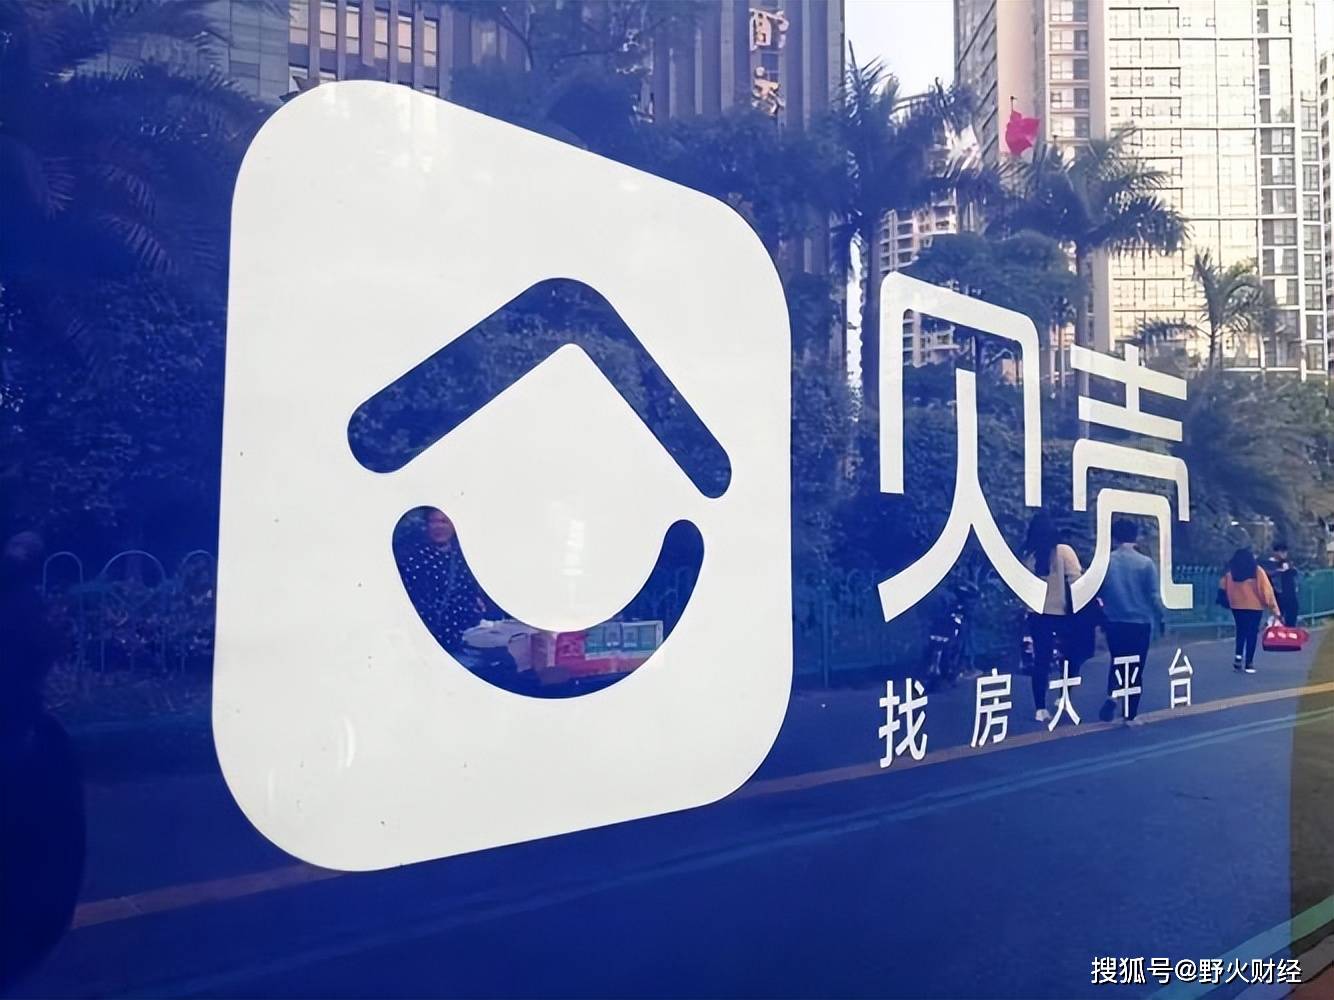 影音娱乐：一宵一码-上海新房价格波动 二手房价格跌幅收窄